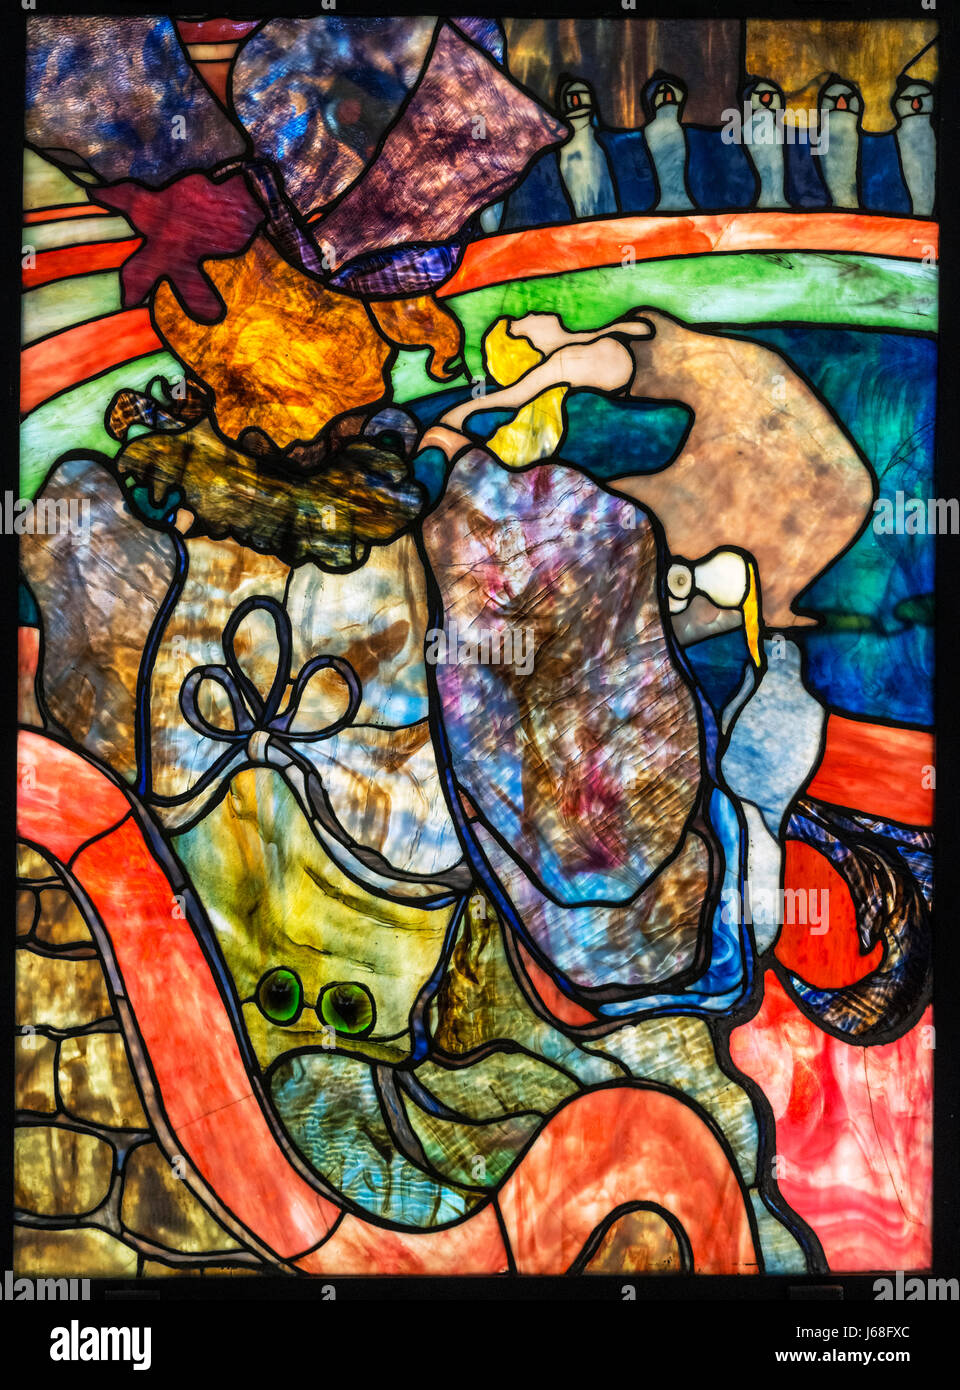 Toulouse-Lautrec und Louis Comfort Tiffany. Glasmalerei mit dem Titel "Au Nouveau Cirque, Papa englischen" (im neuen Zirkus, Papa Chrysantheme) von Henri de Toulouse-Lautrec (1864-1901), mit Glasmalerei von Louis Comfort Tiffany (1848-1933), c.1894 Stockfoto